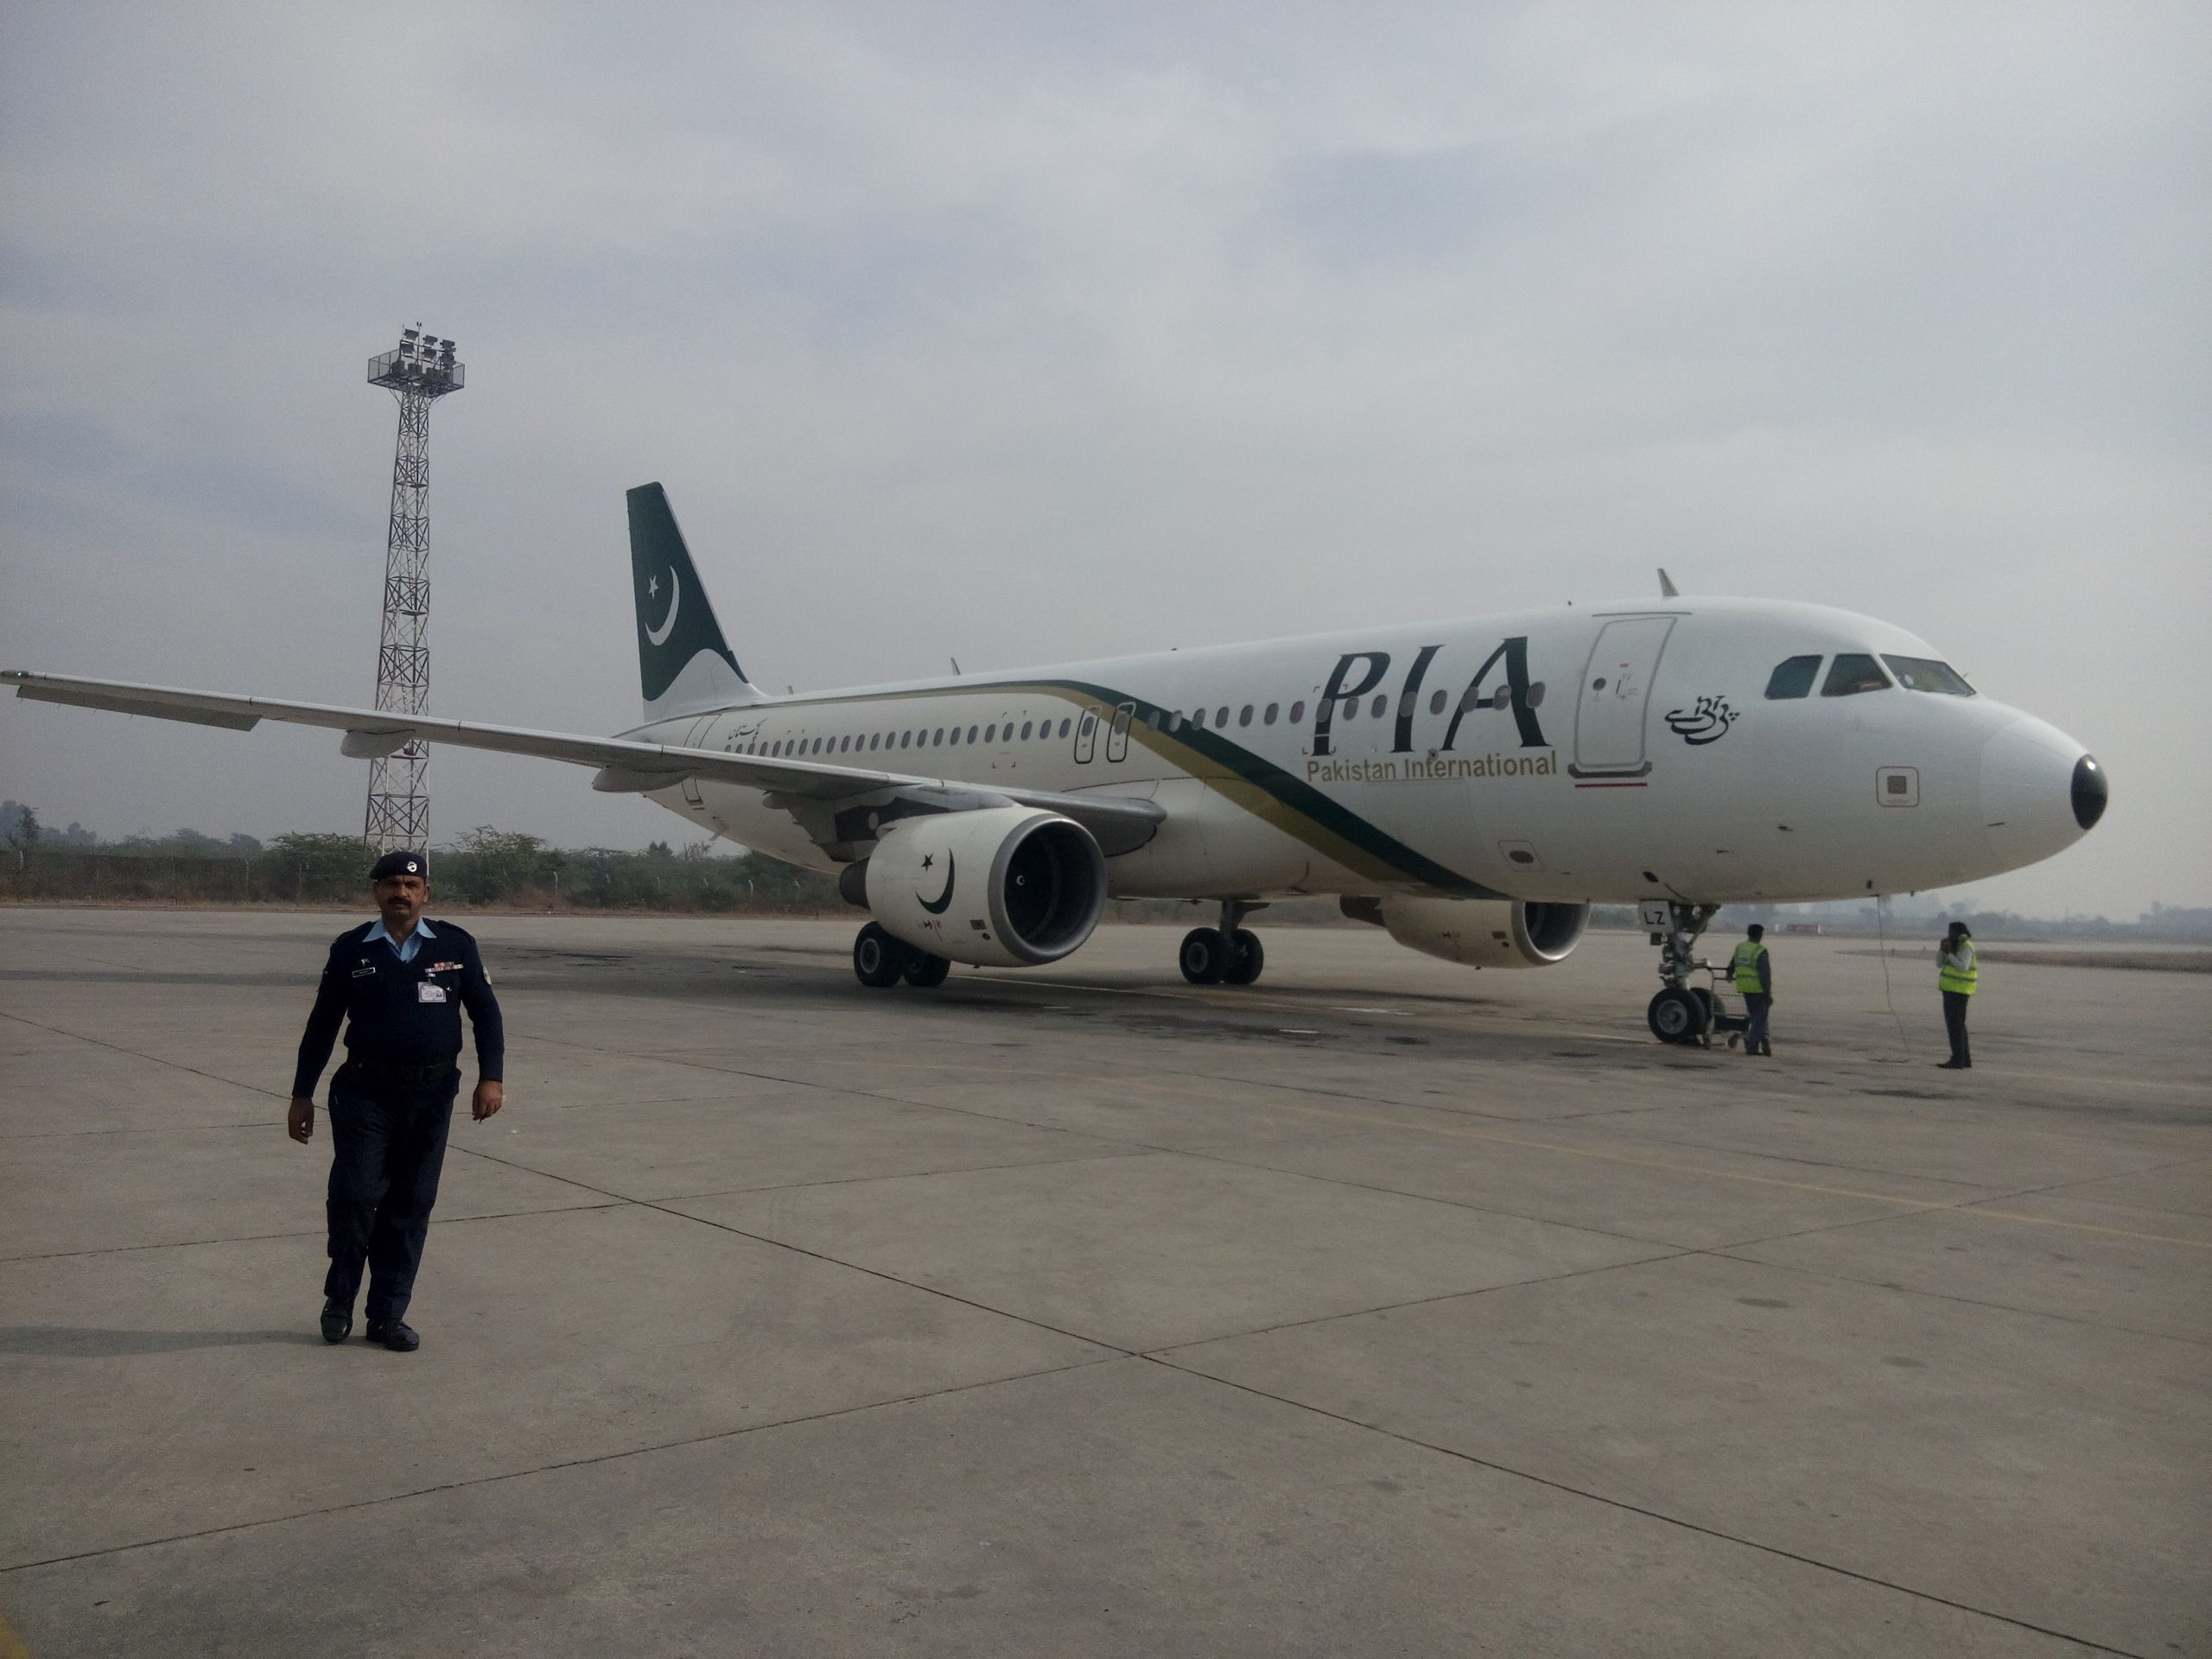 Le crash de Pakistan International Airlines en vidéos 1 Air Journal